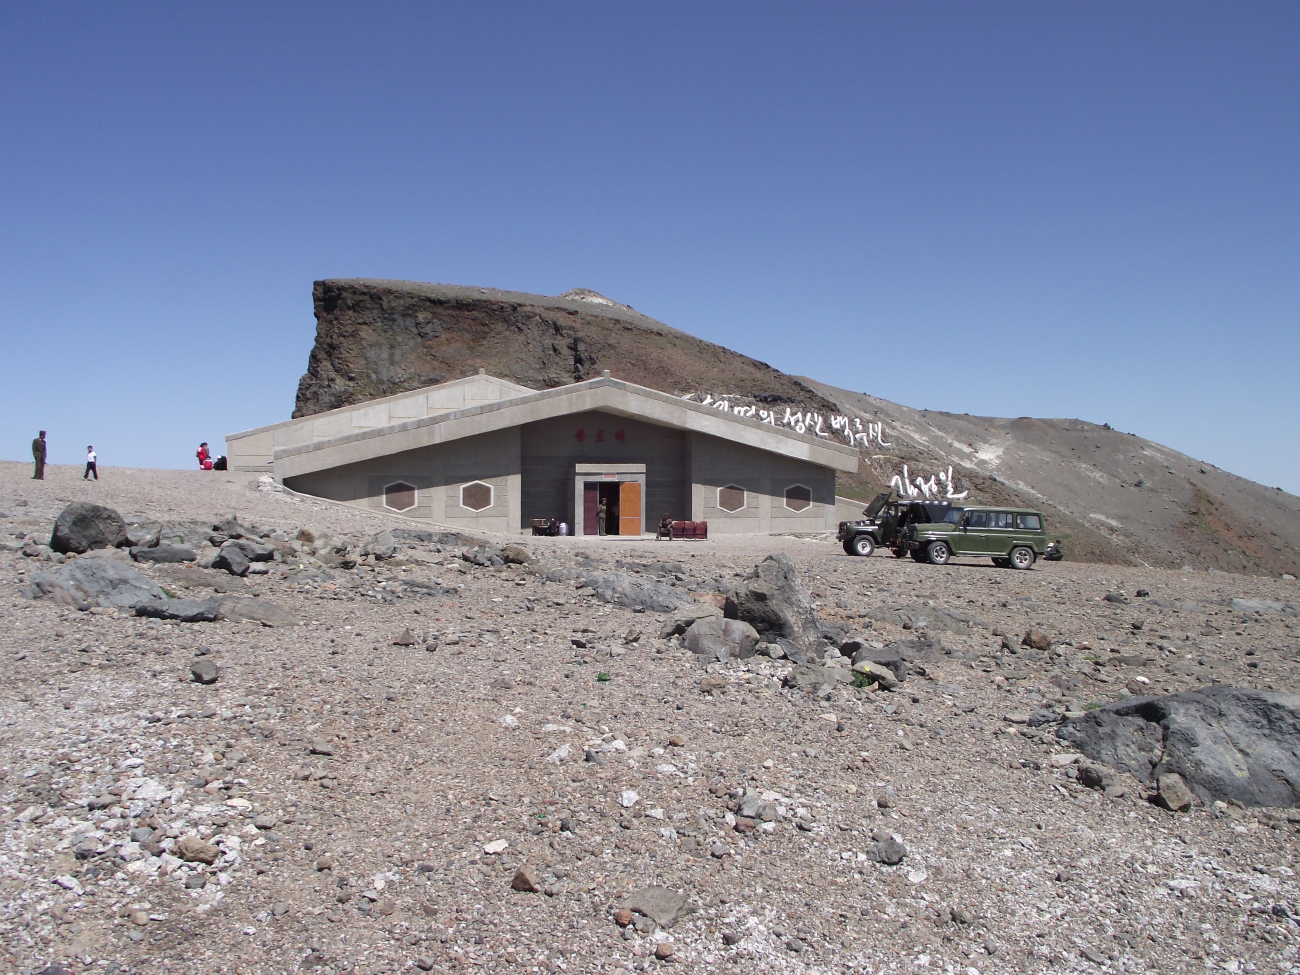 Mount Paektu — Funicular